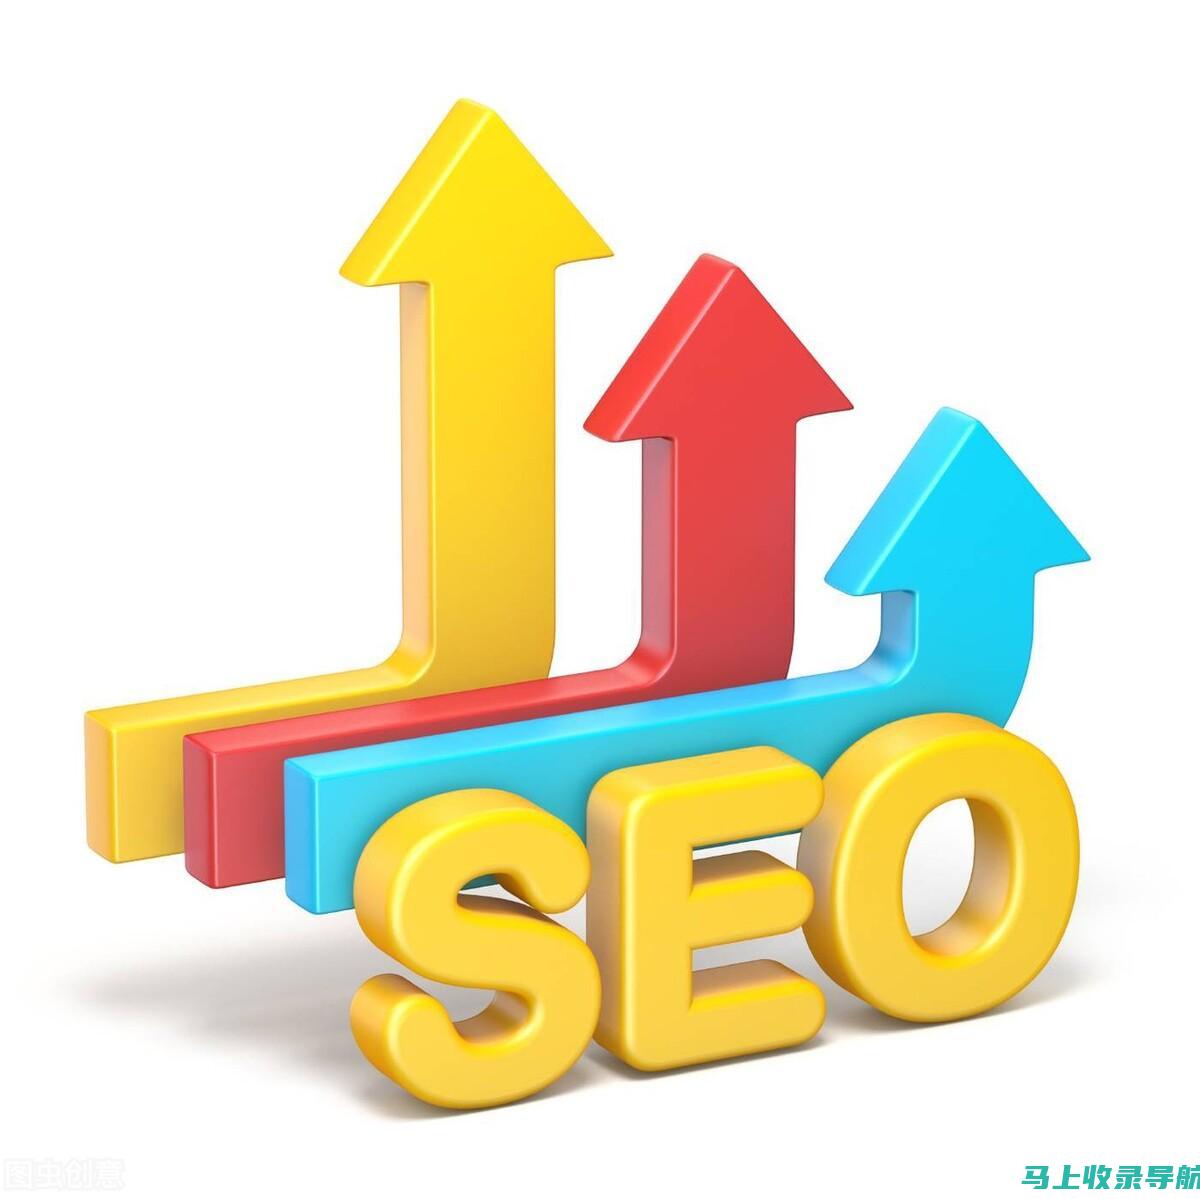 搜索引擎优化（SEO）：优化网站和内容，以提高其在搜索结果中的排名。